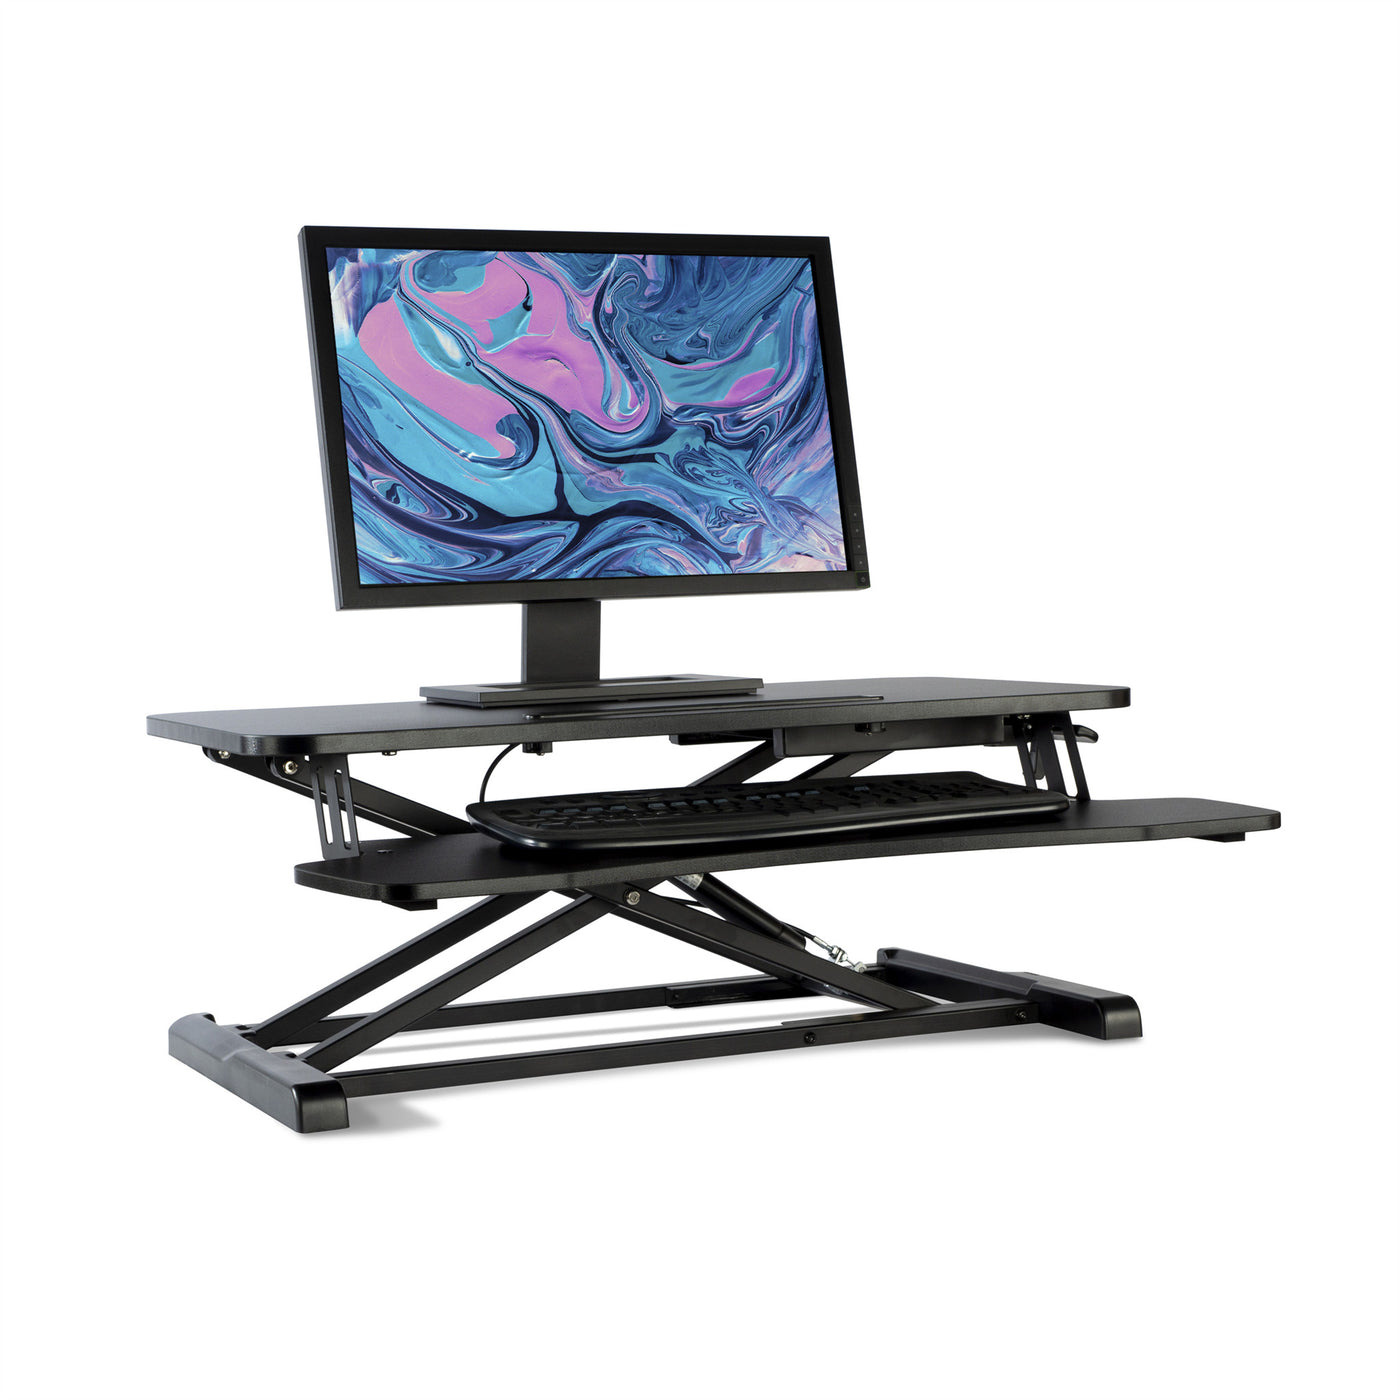 Logicfox Standing Desk Converter